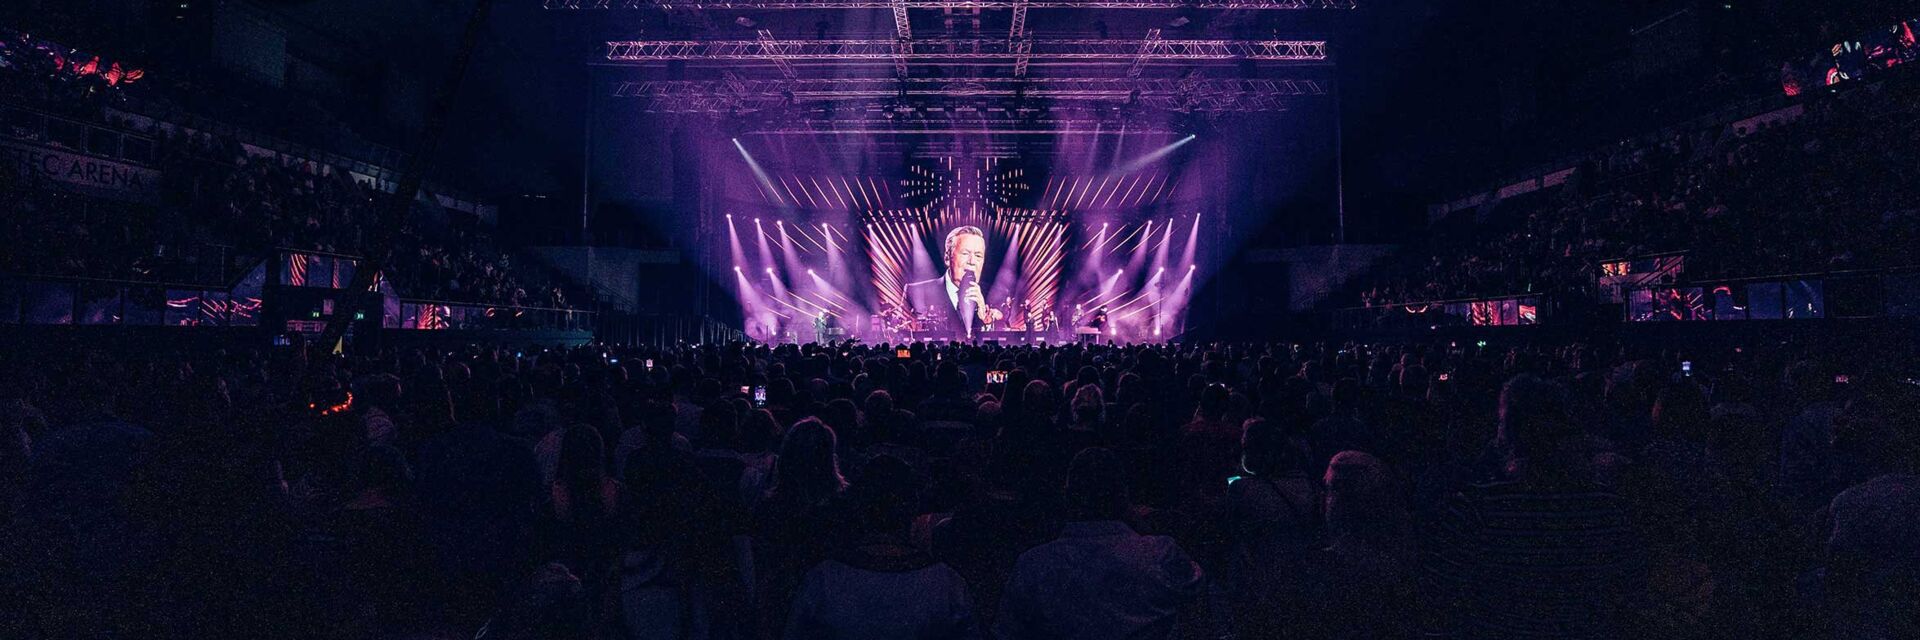 Roland Kaiser gibt ein Konzert in der GETEC-Arena. Das Publikum ist von hinten zu sehen und das Bild erscheint in violetten Farben